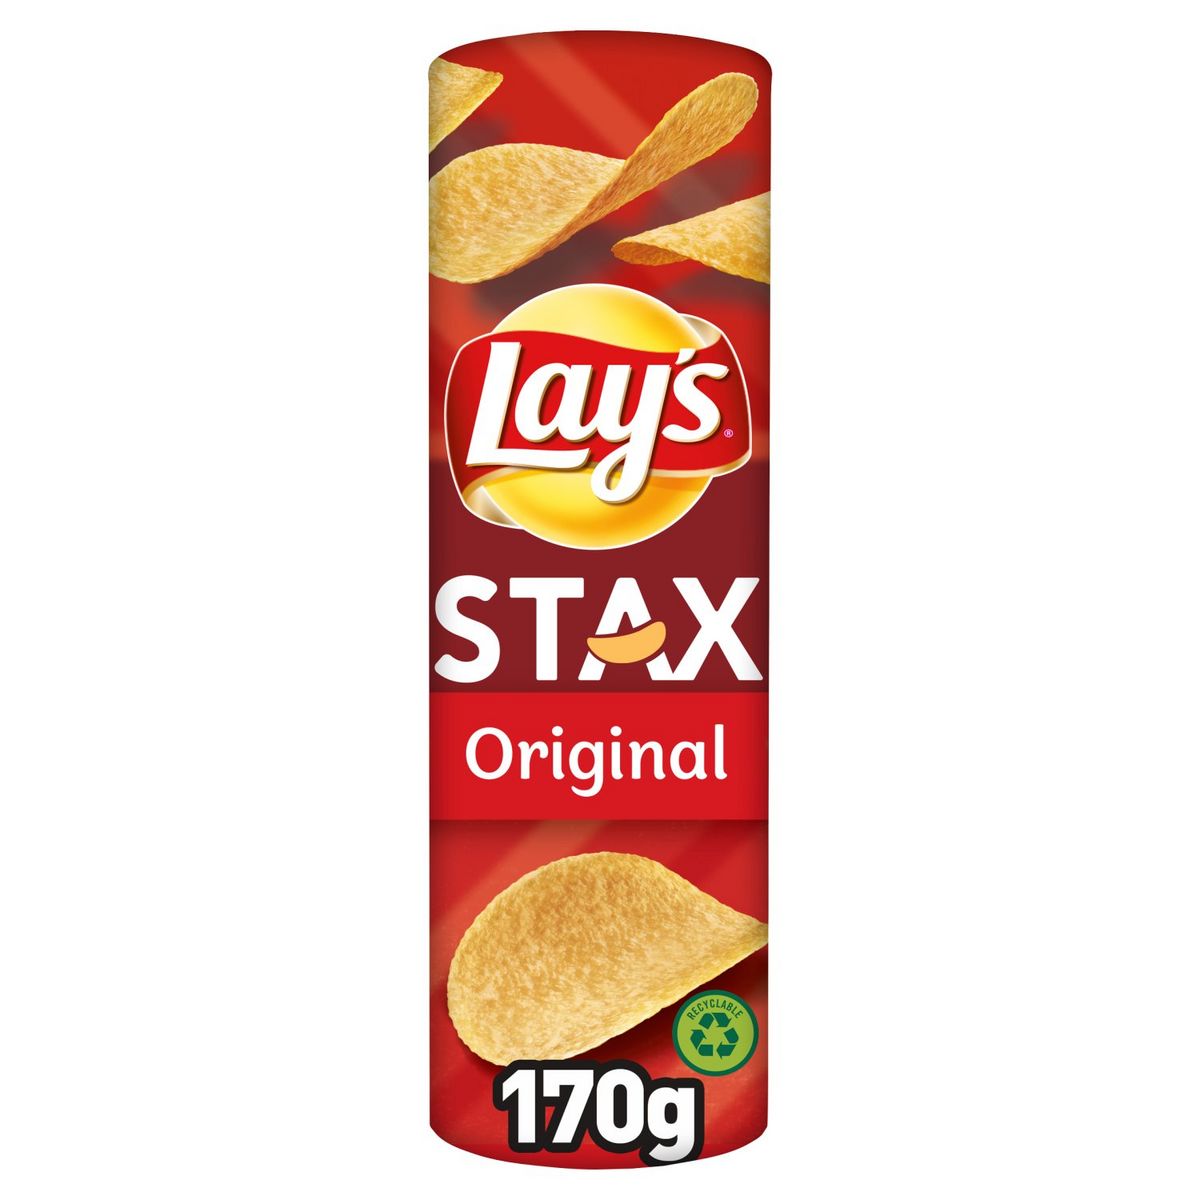 Lays Stax original salty taste tube 170g